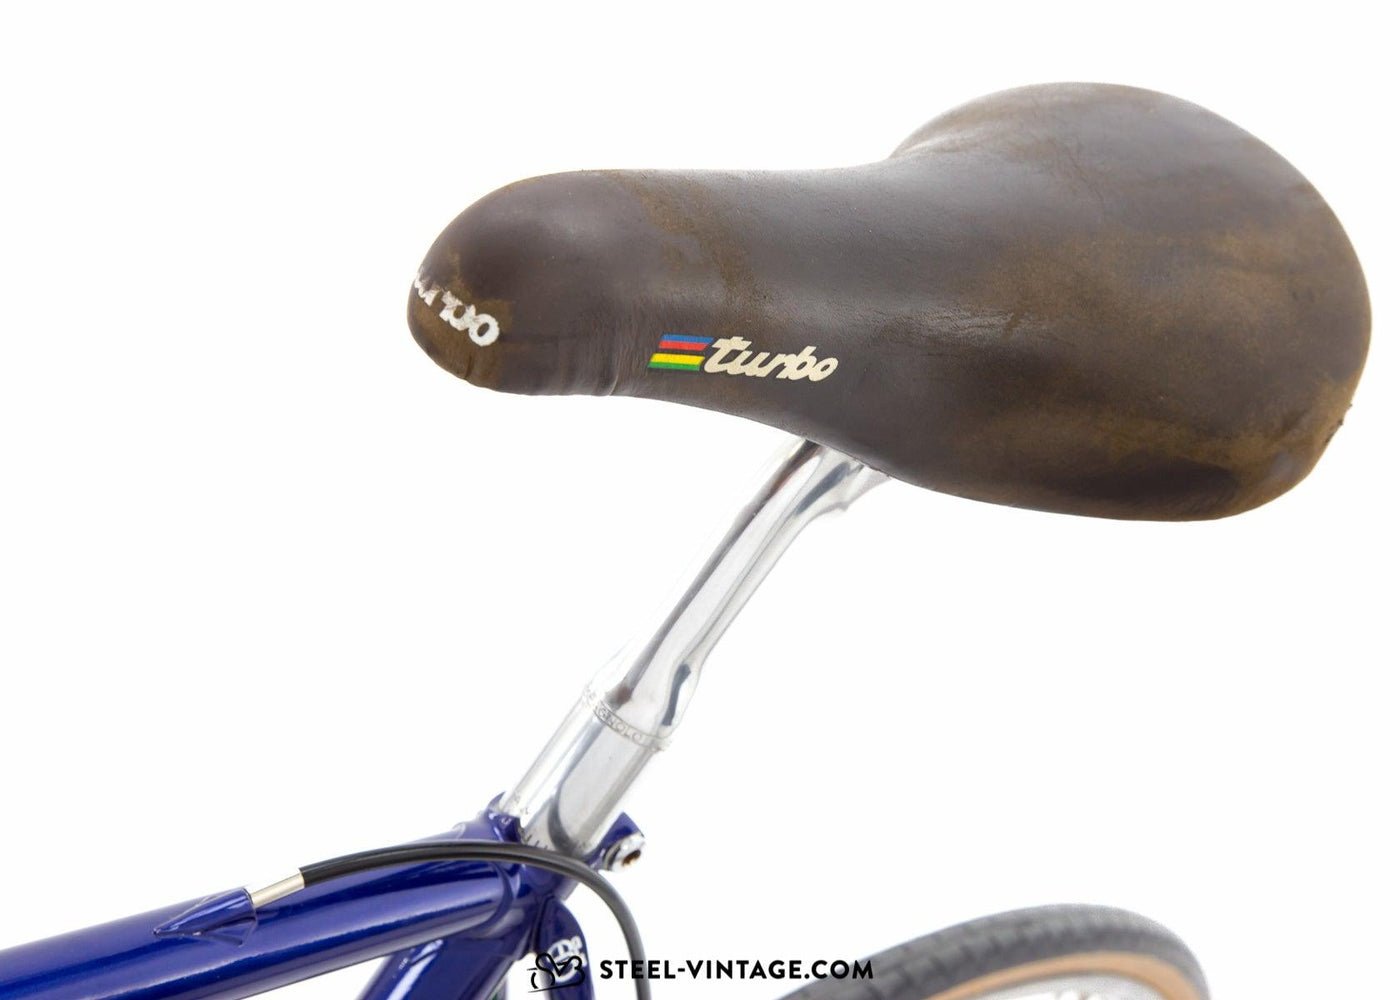 Eddy Merckx Strada Team Kelme Road Bicycle 1990s - Steel Vintage Bikes